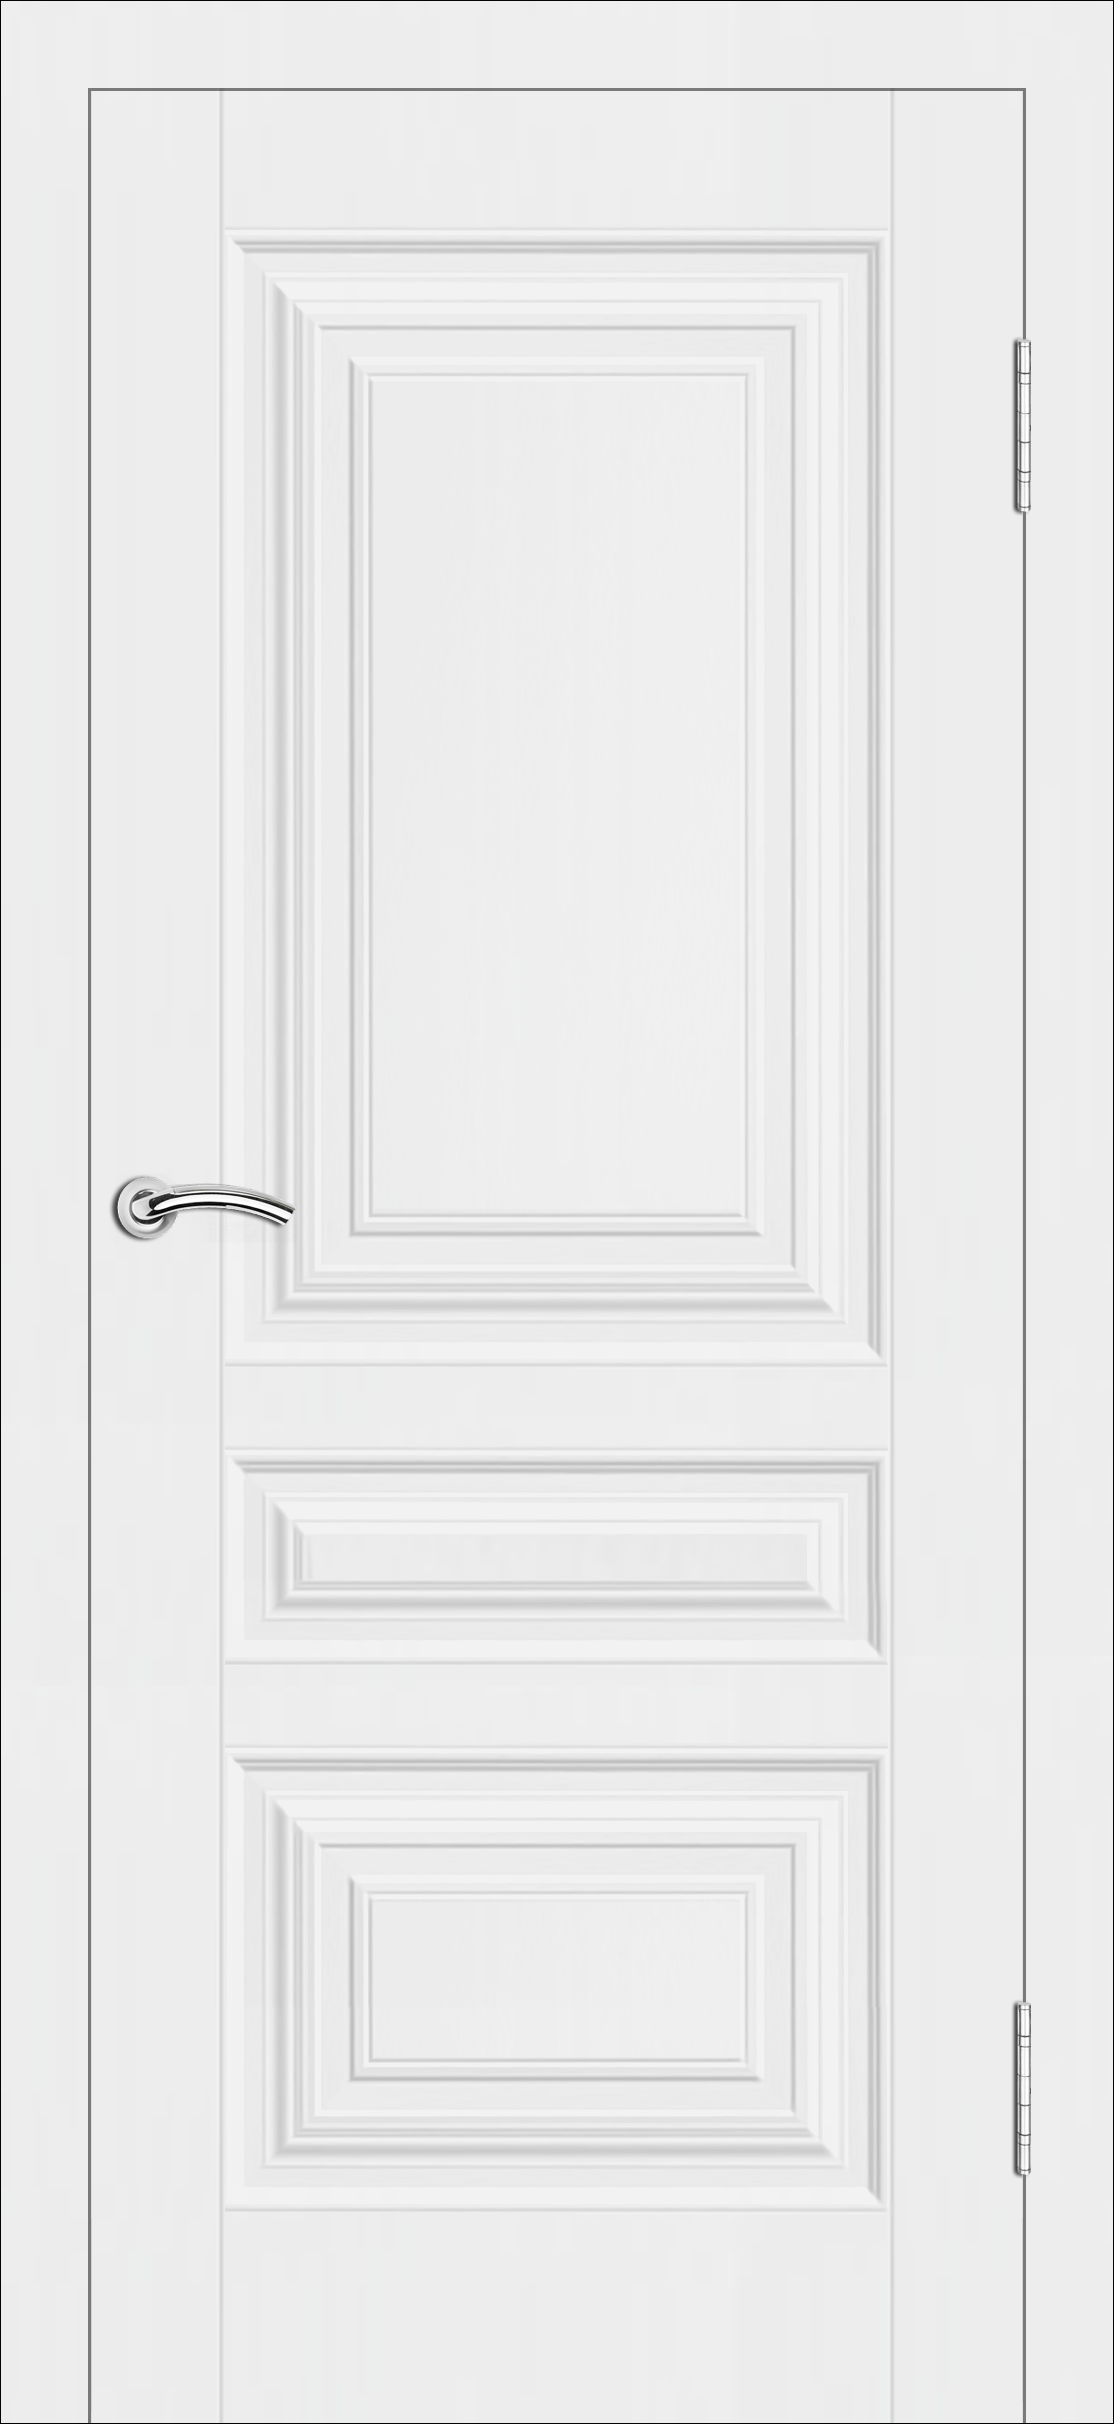 Межкомнатная дверь «Терри». Вид отделки Белая эмаль Cтандартный наличник